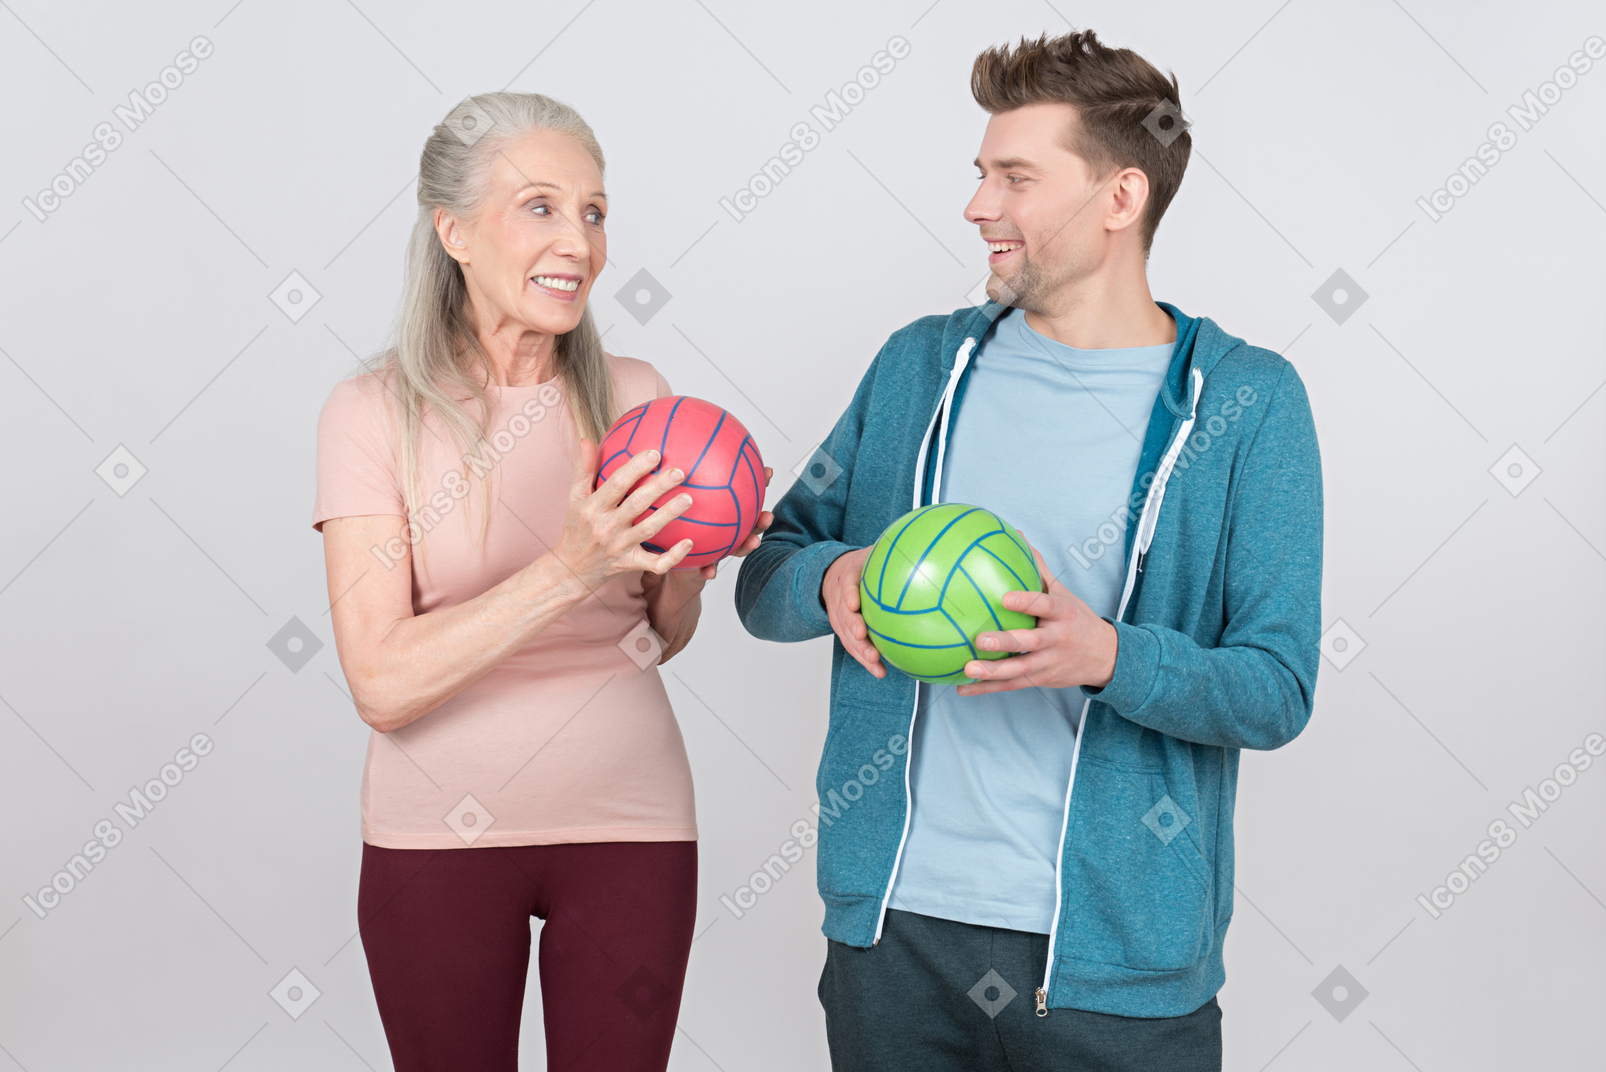 微笑的老妇人和年轻小伙子手持彩球